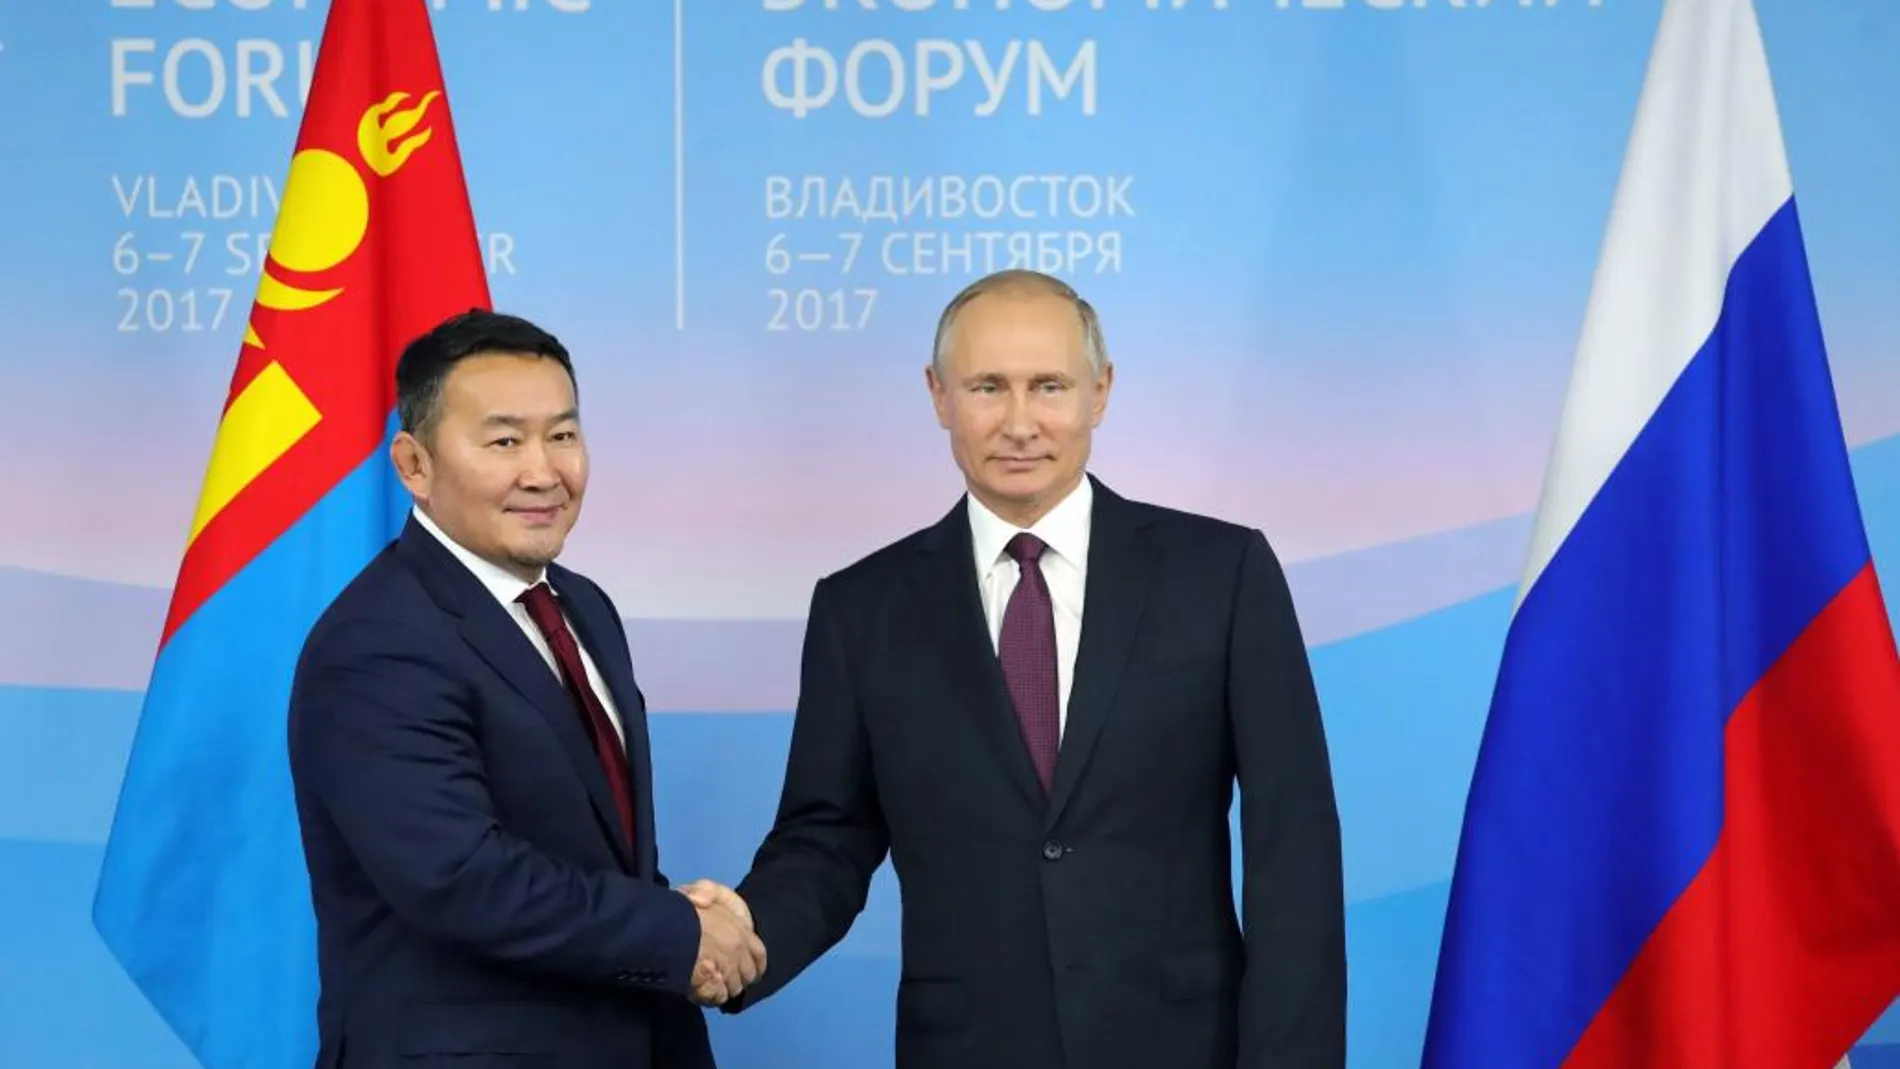 El presidente ruso Vladimir Putin (d) posa junto al presidente de Mongolia Khaltmaa Battulga (i) antes de una reunión bilateral en el marco del Foro Económico Oriental.